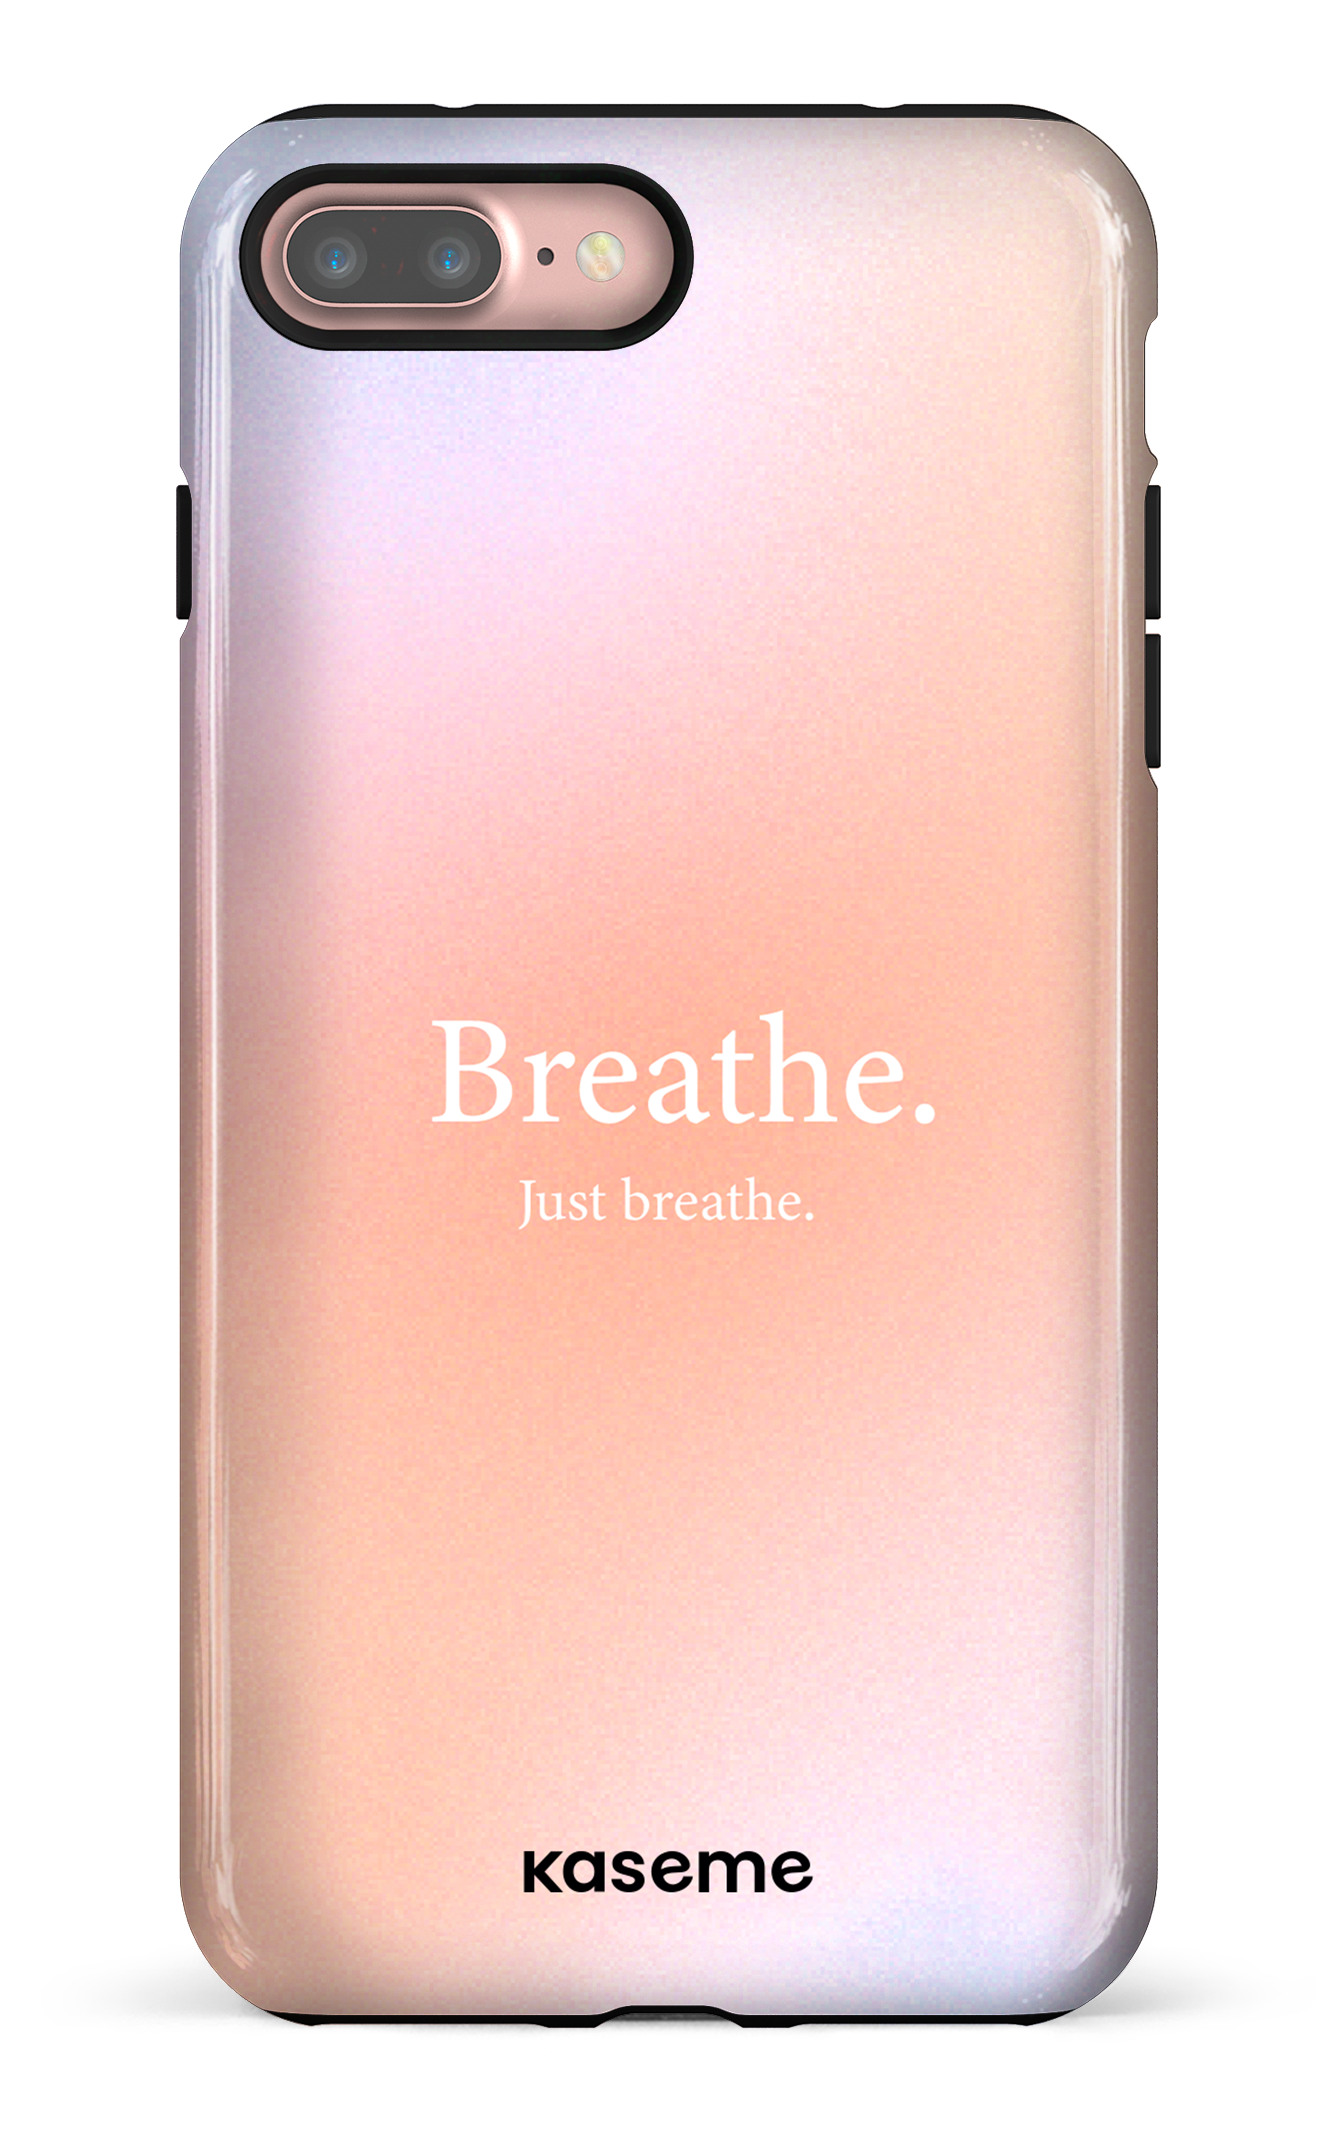 Just breathe - iPhone 7 Plus